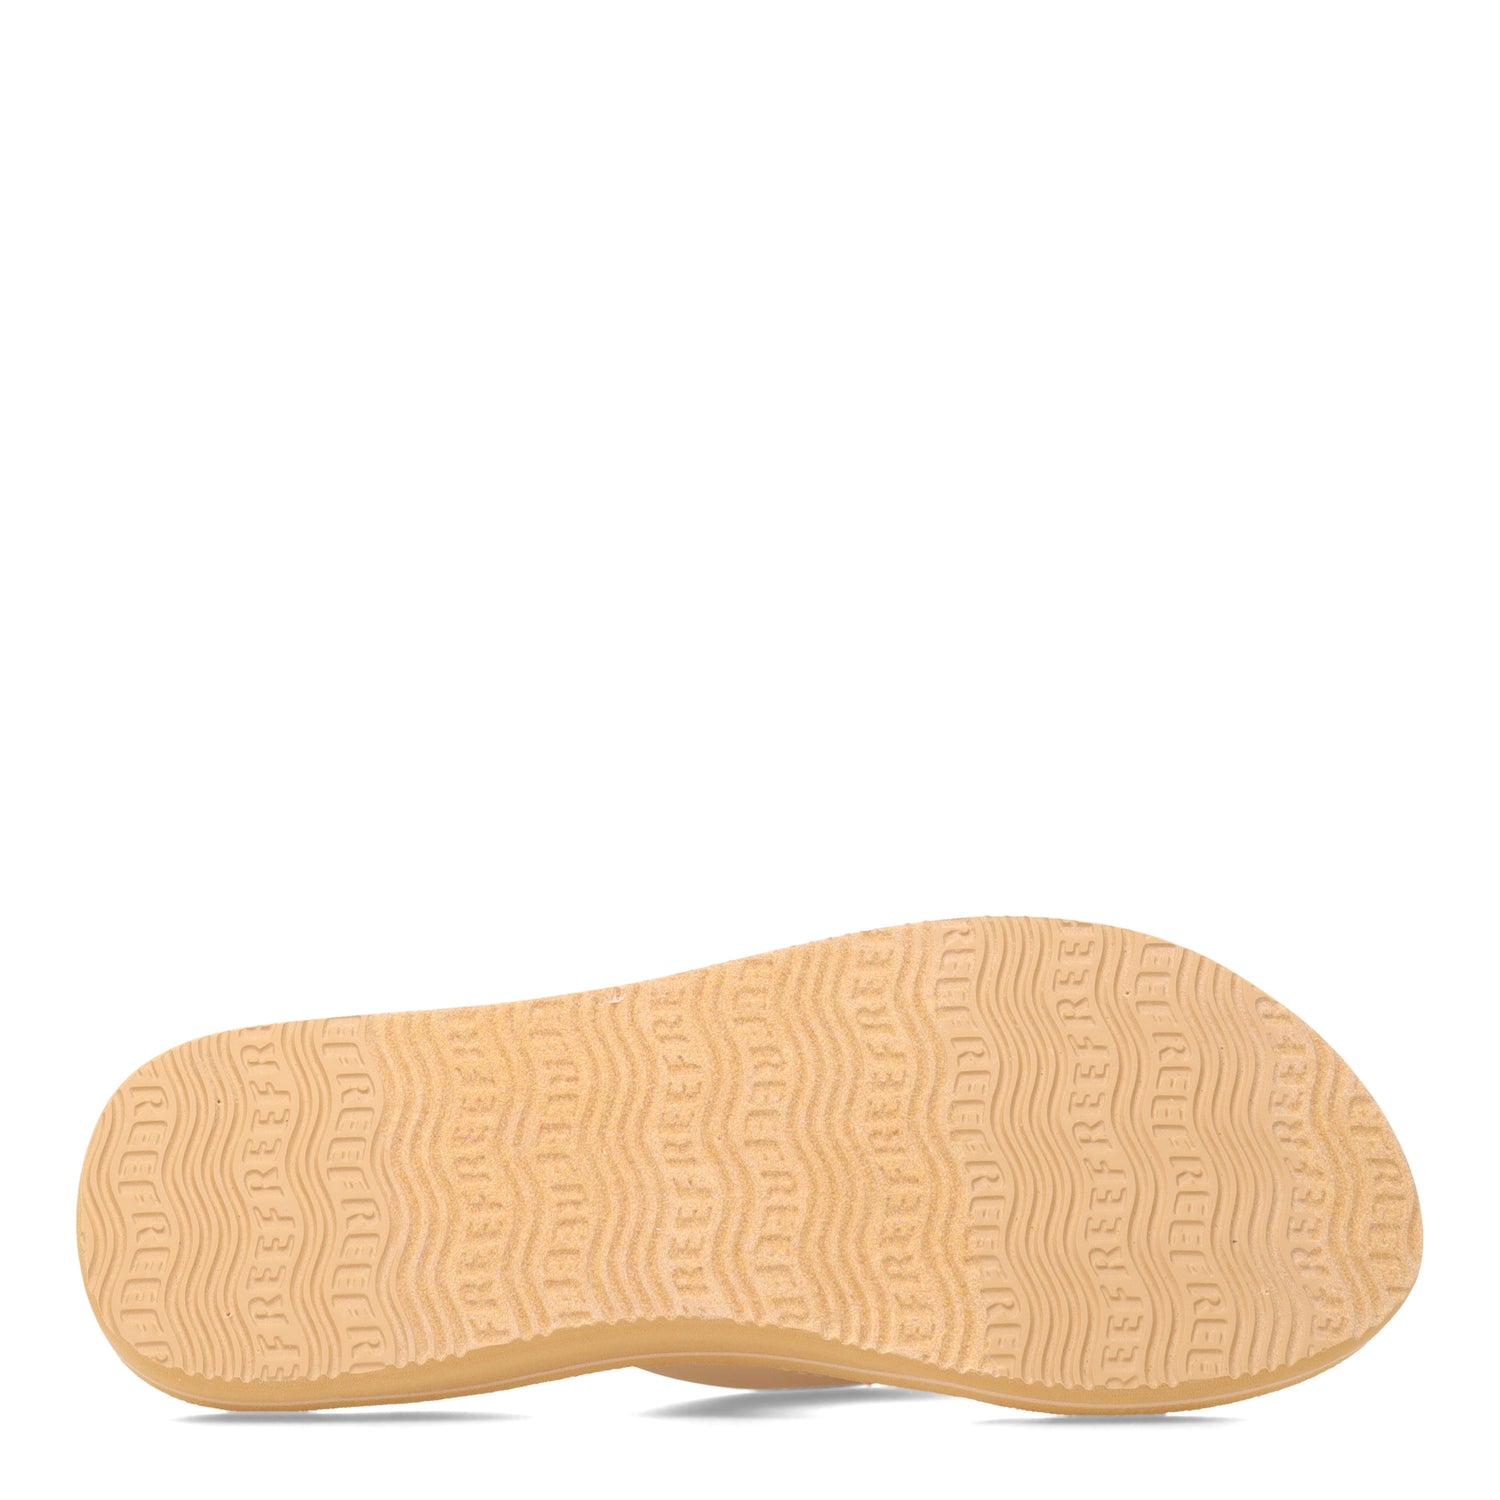 Peltz Shoes  Women's Reef Cushion Sands Sandal Champagne CI6676